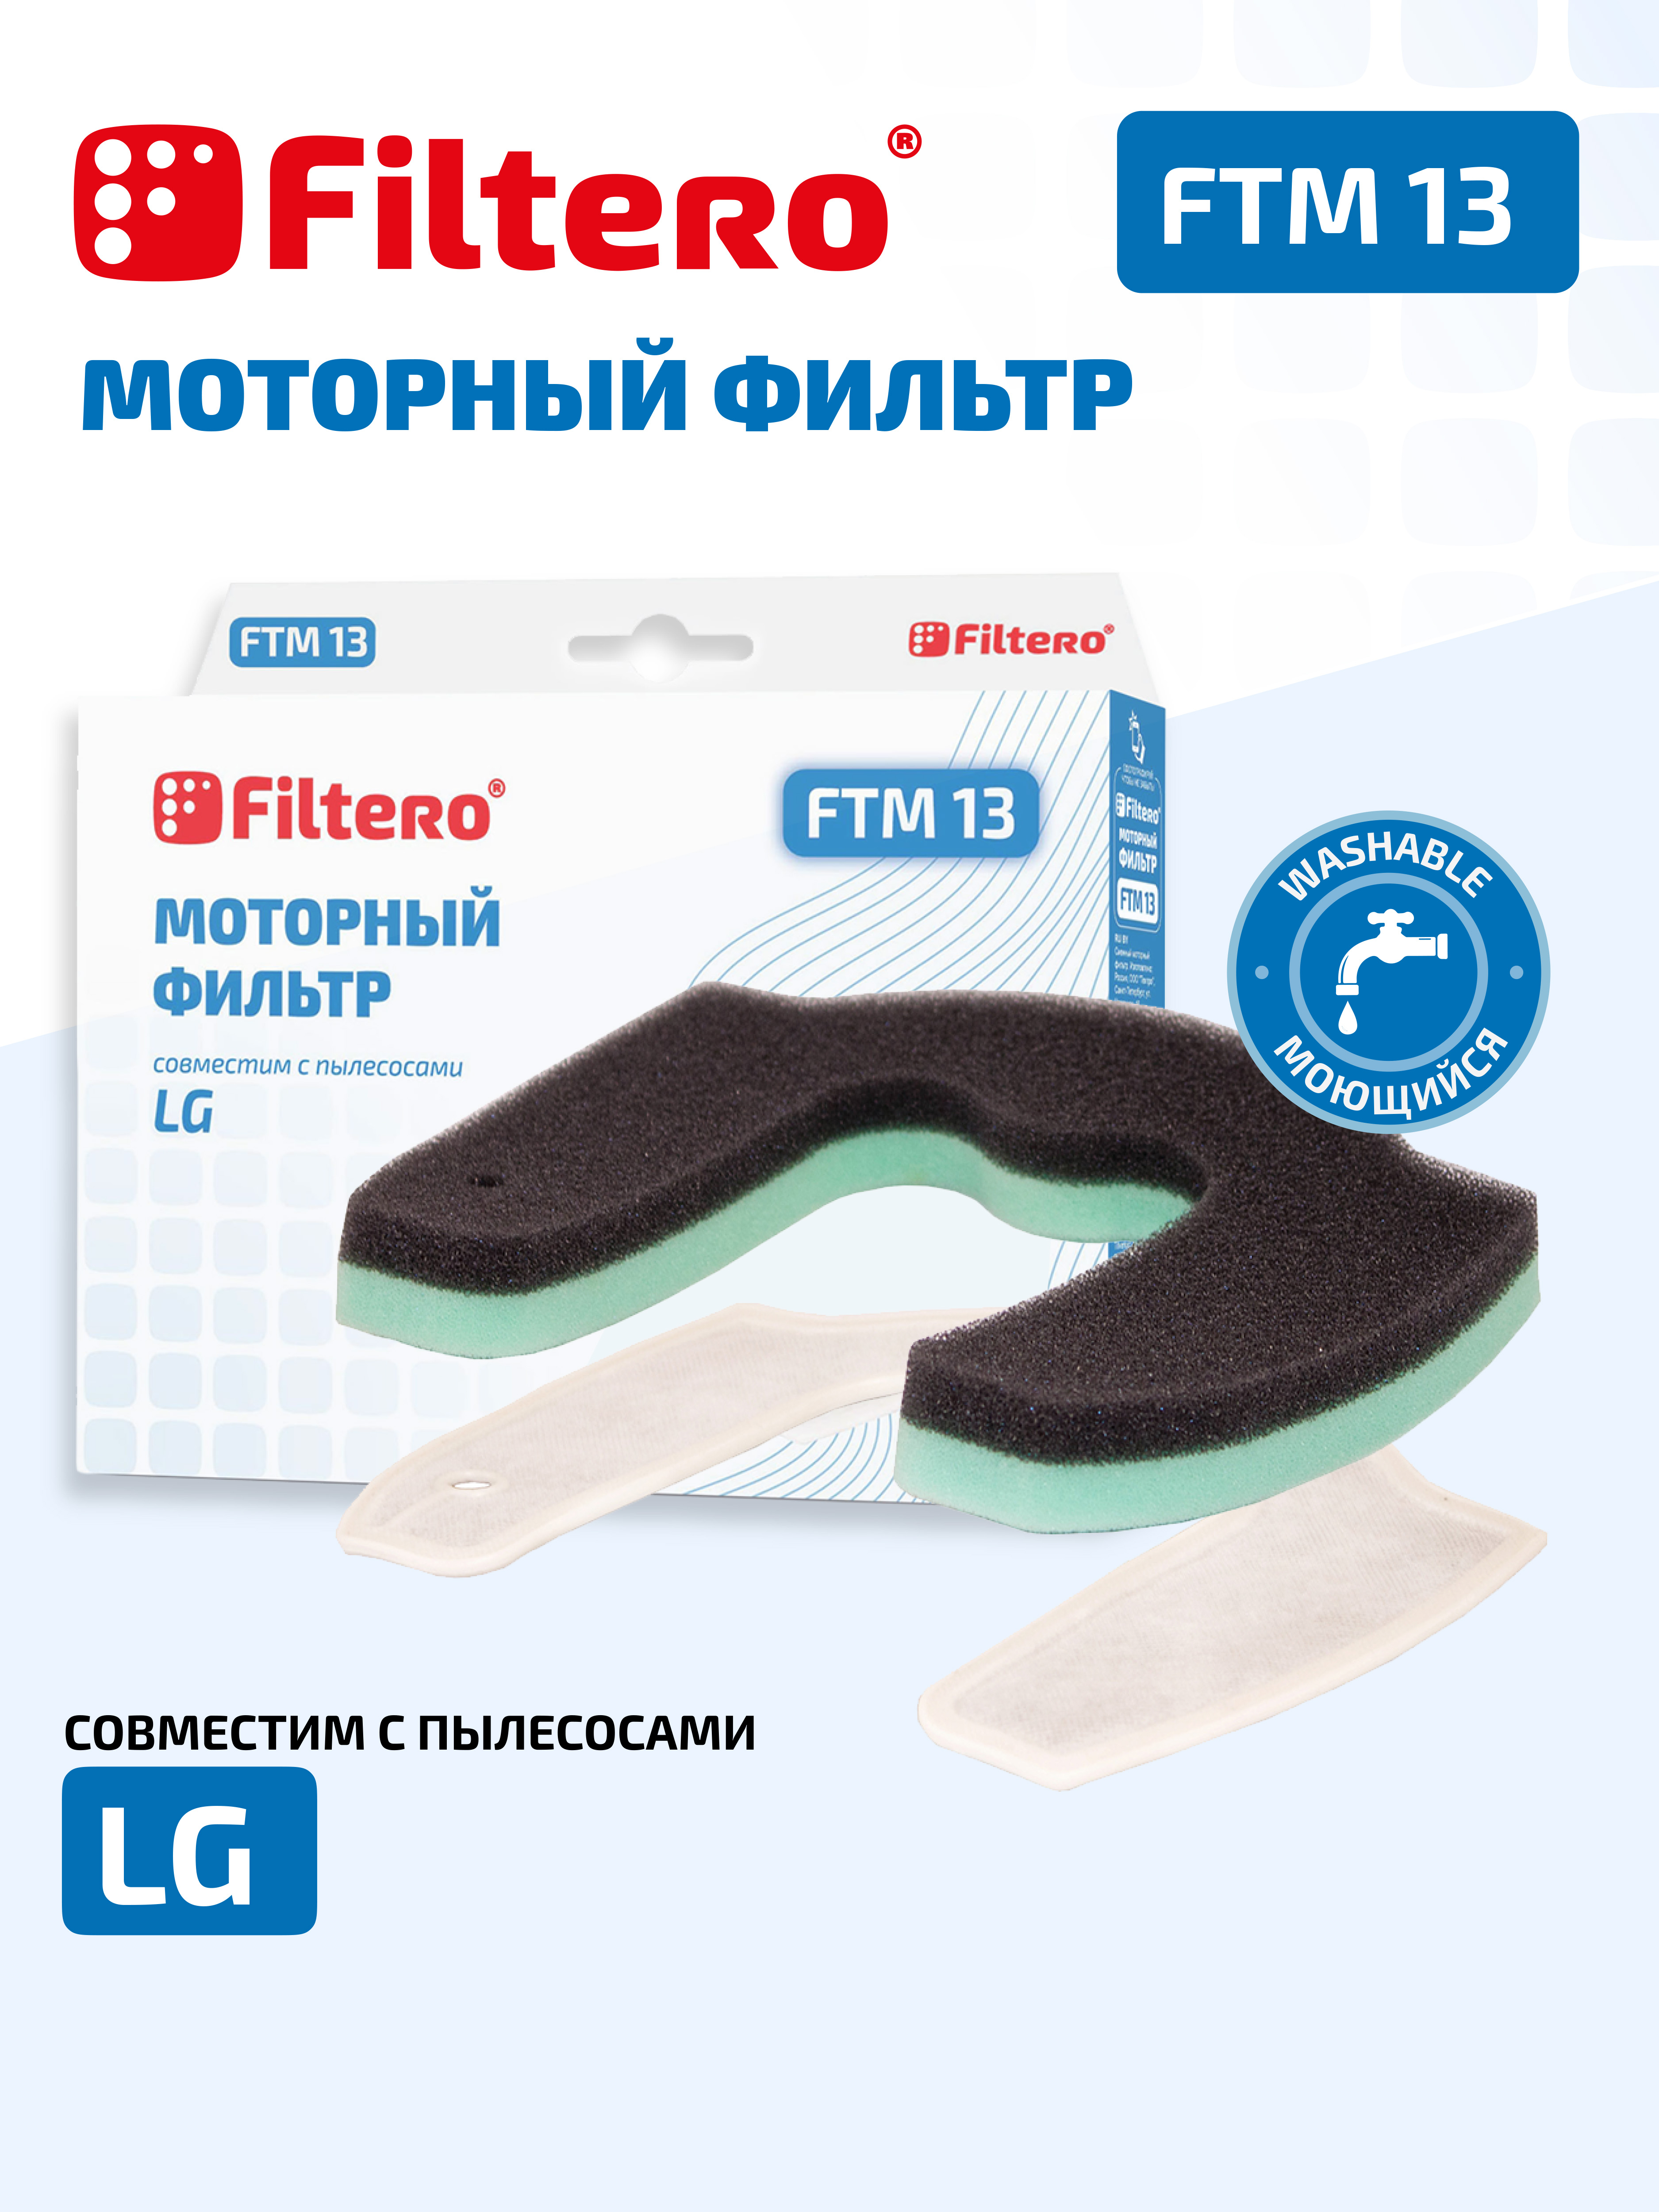 картинка Моторный фильтр Filtero FTM 13 для пылесосов LG от сети строительных магазинов в Старой Руссе